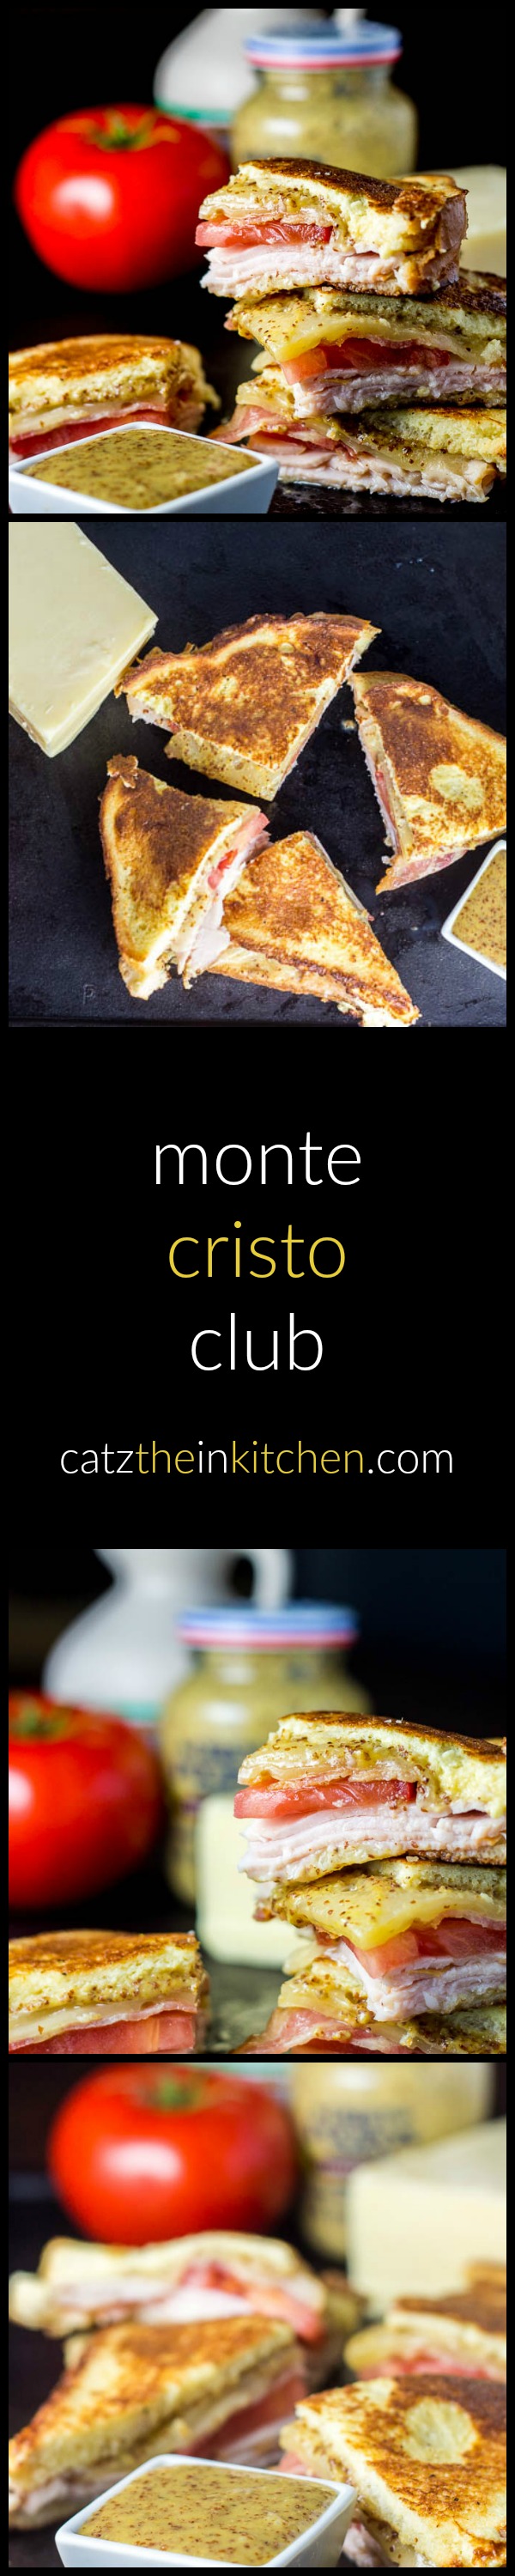 Monte Cristo Club | Catz in the Kitchen | catzinthekitchen.com | #montecristo #sandwich #club #recipe